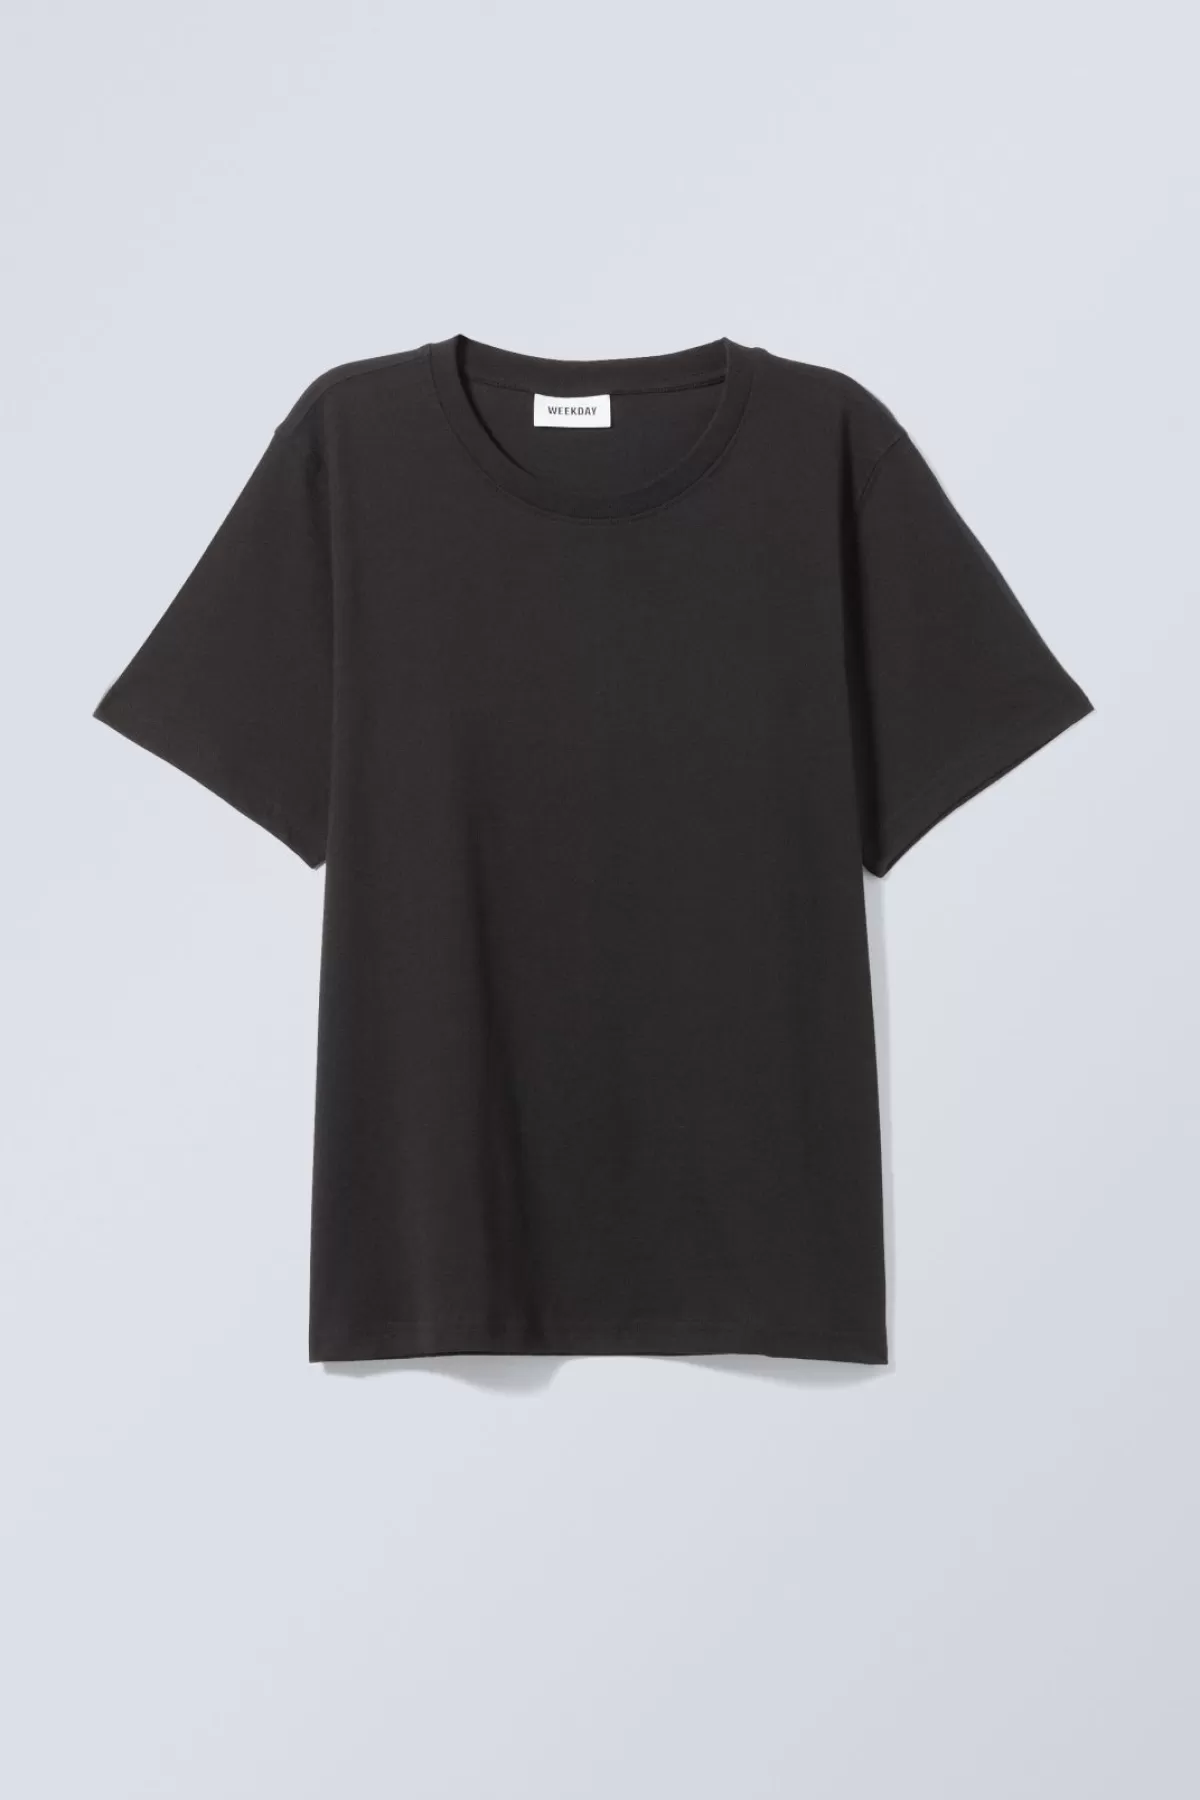 Weekday Essence Standard T- shirt Cheap